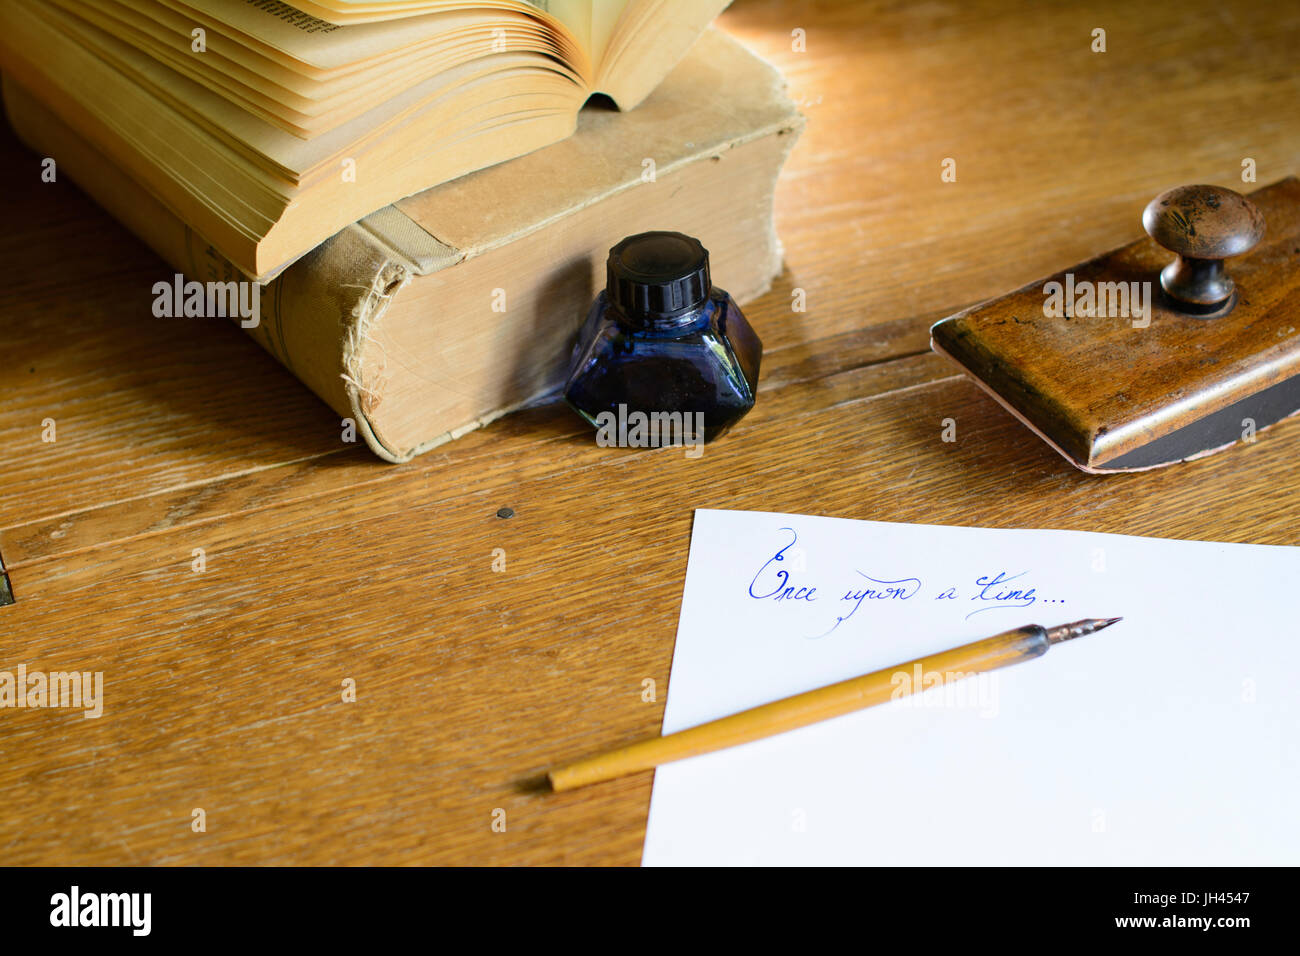 La frase "Una volta" splendidamente scritta a mano su un foglio di carta, circondato con un vecchio fermo. Foto Stock